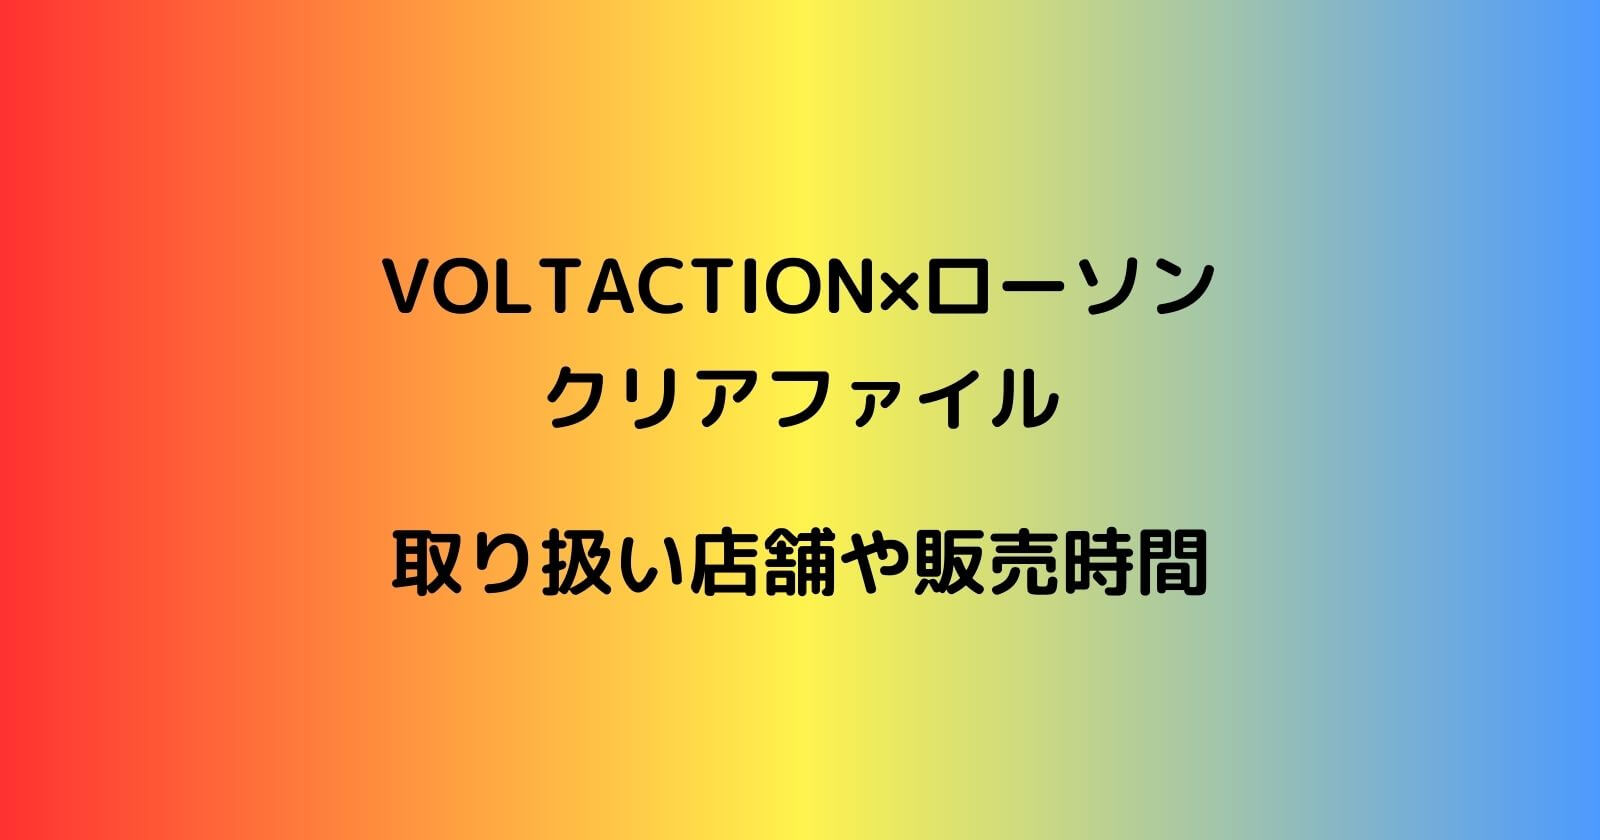 VOLTACTION×ローソン「クリアファイル」の取り扱い店舗や販売時間